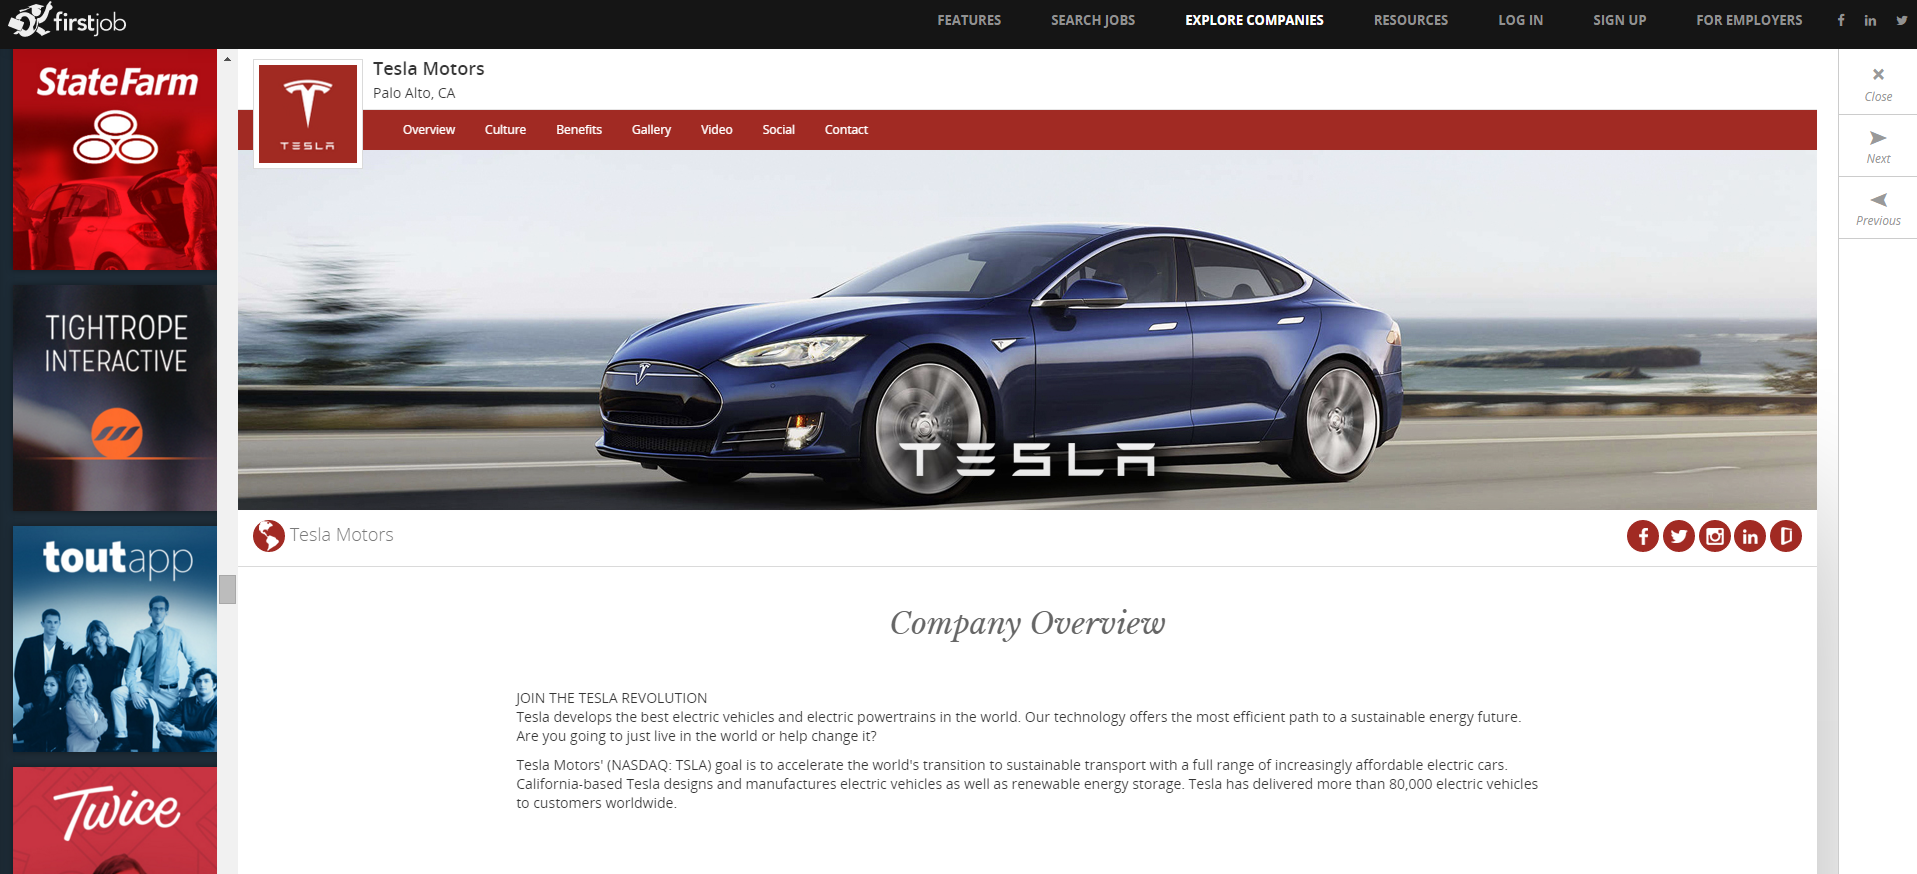 Tesla profile at FirstJob